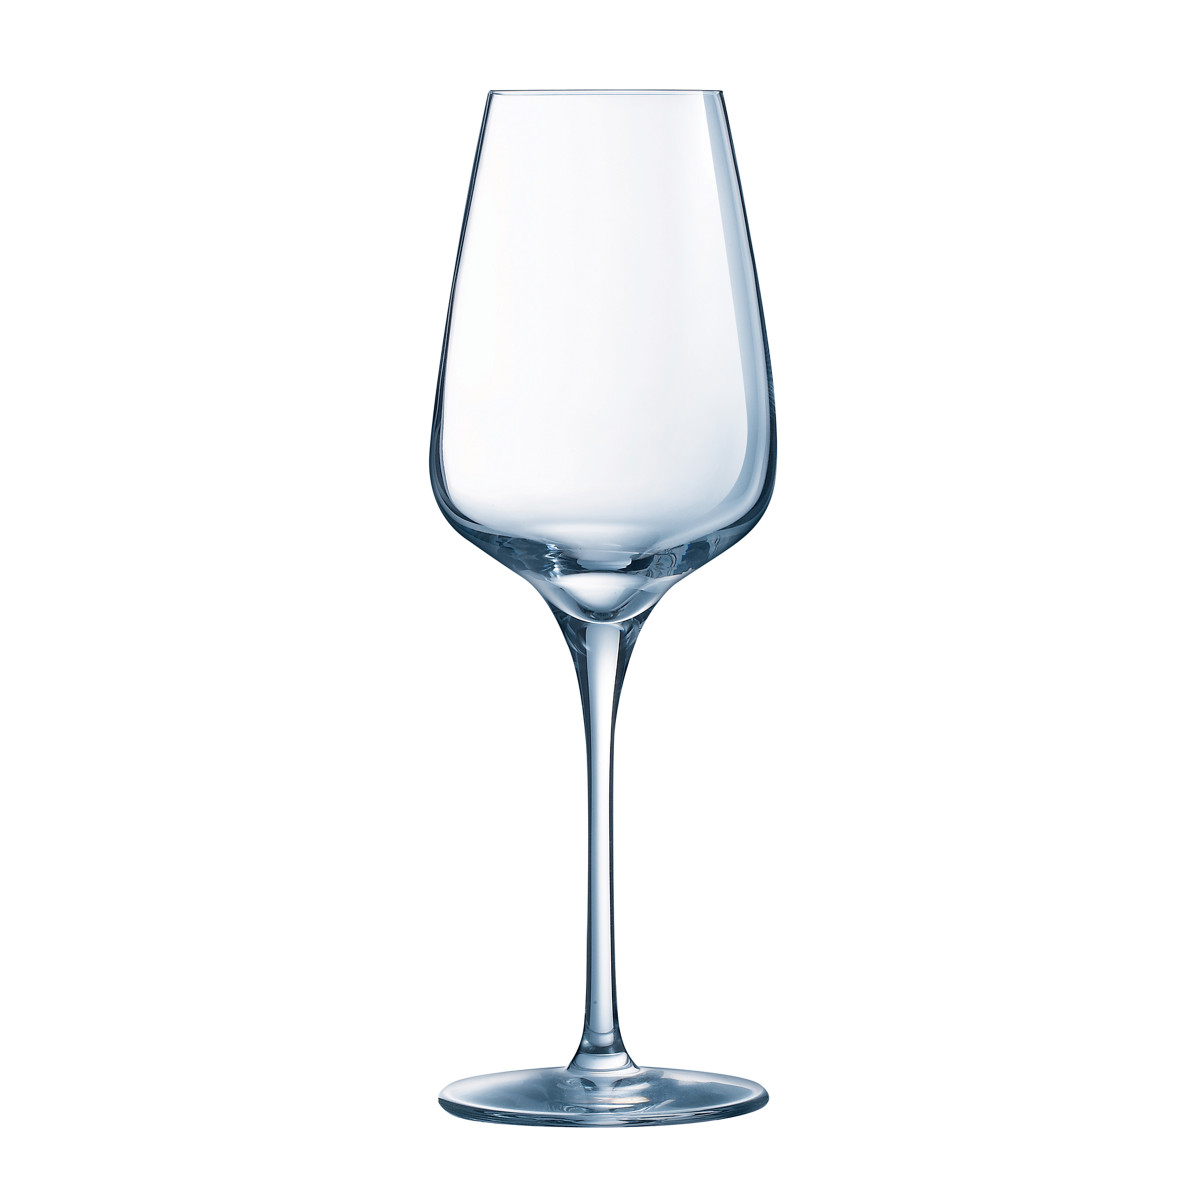 Verre à Vin Blanc - Verre a Vin Original 450ml - Lot de 6 Verres à